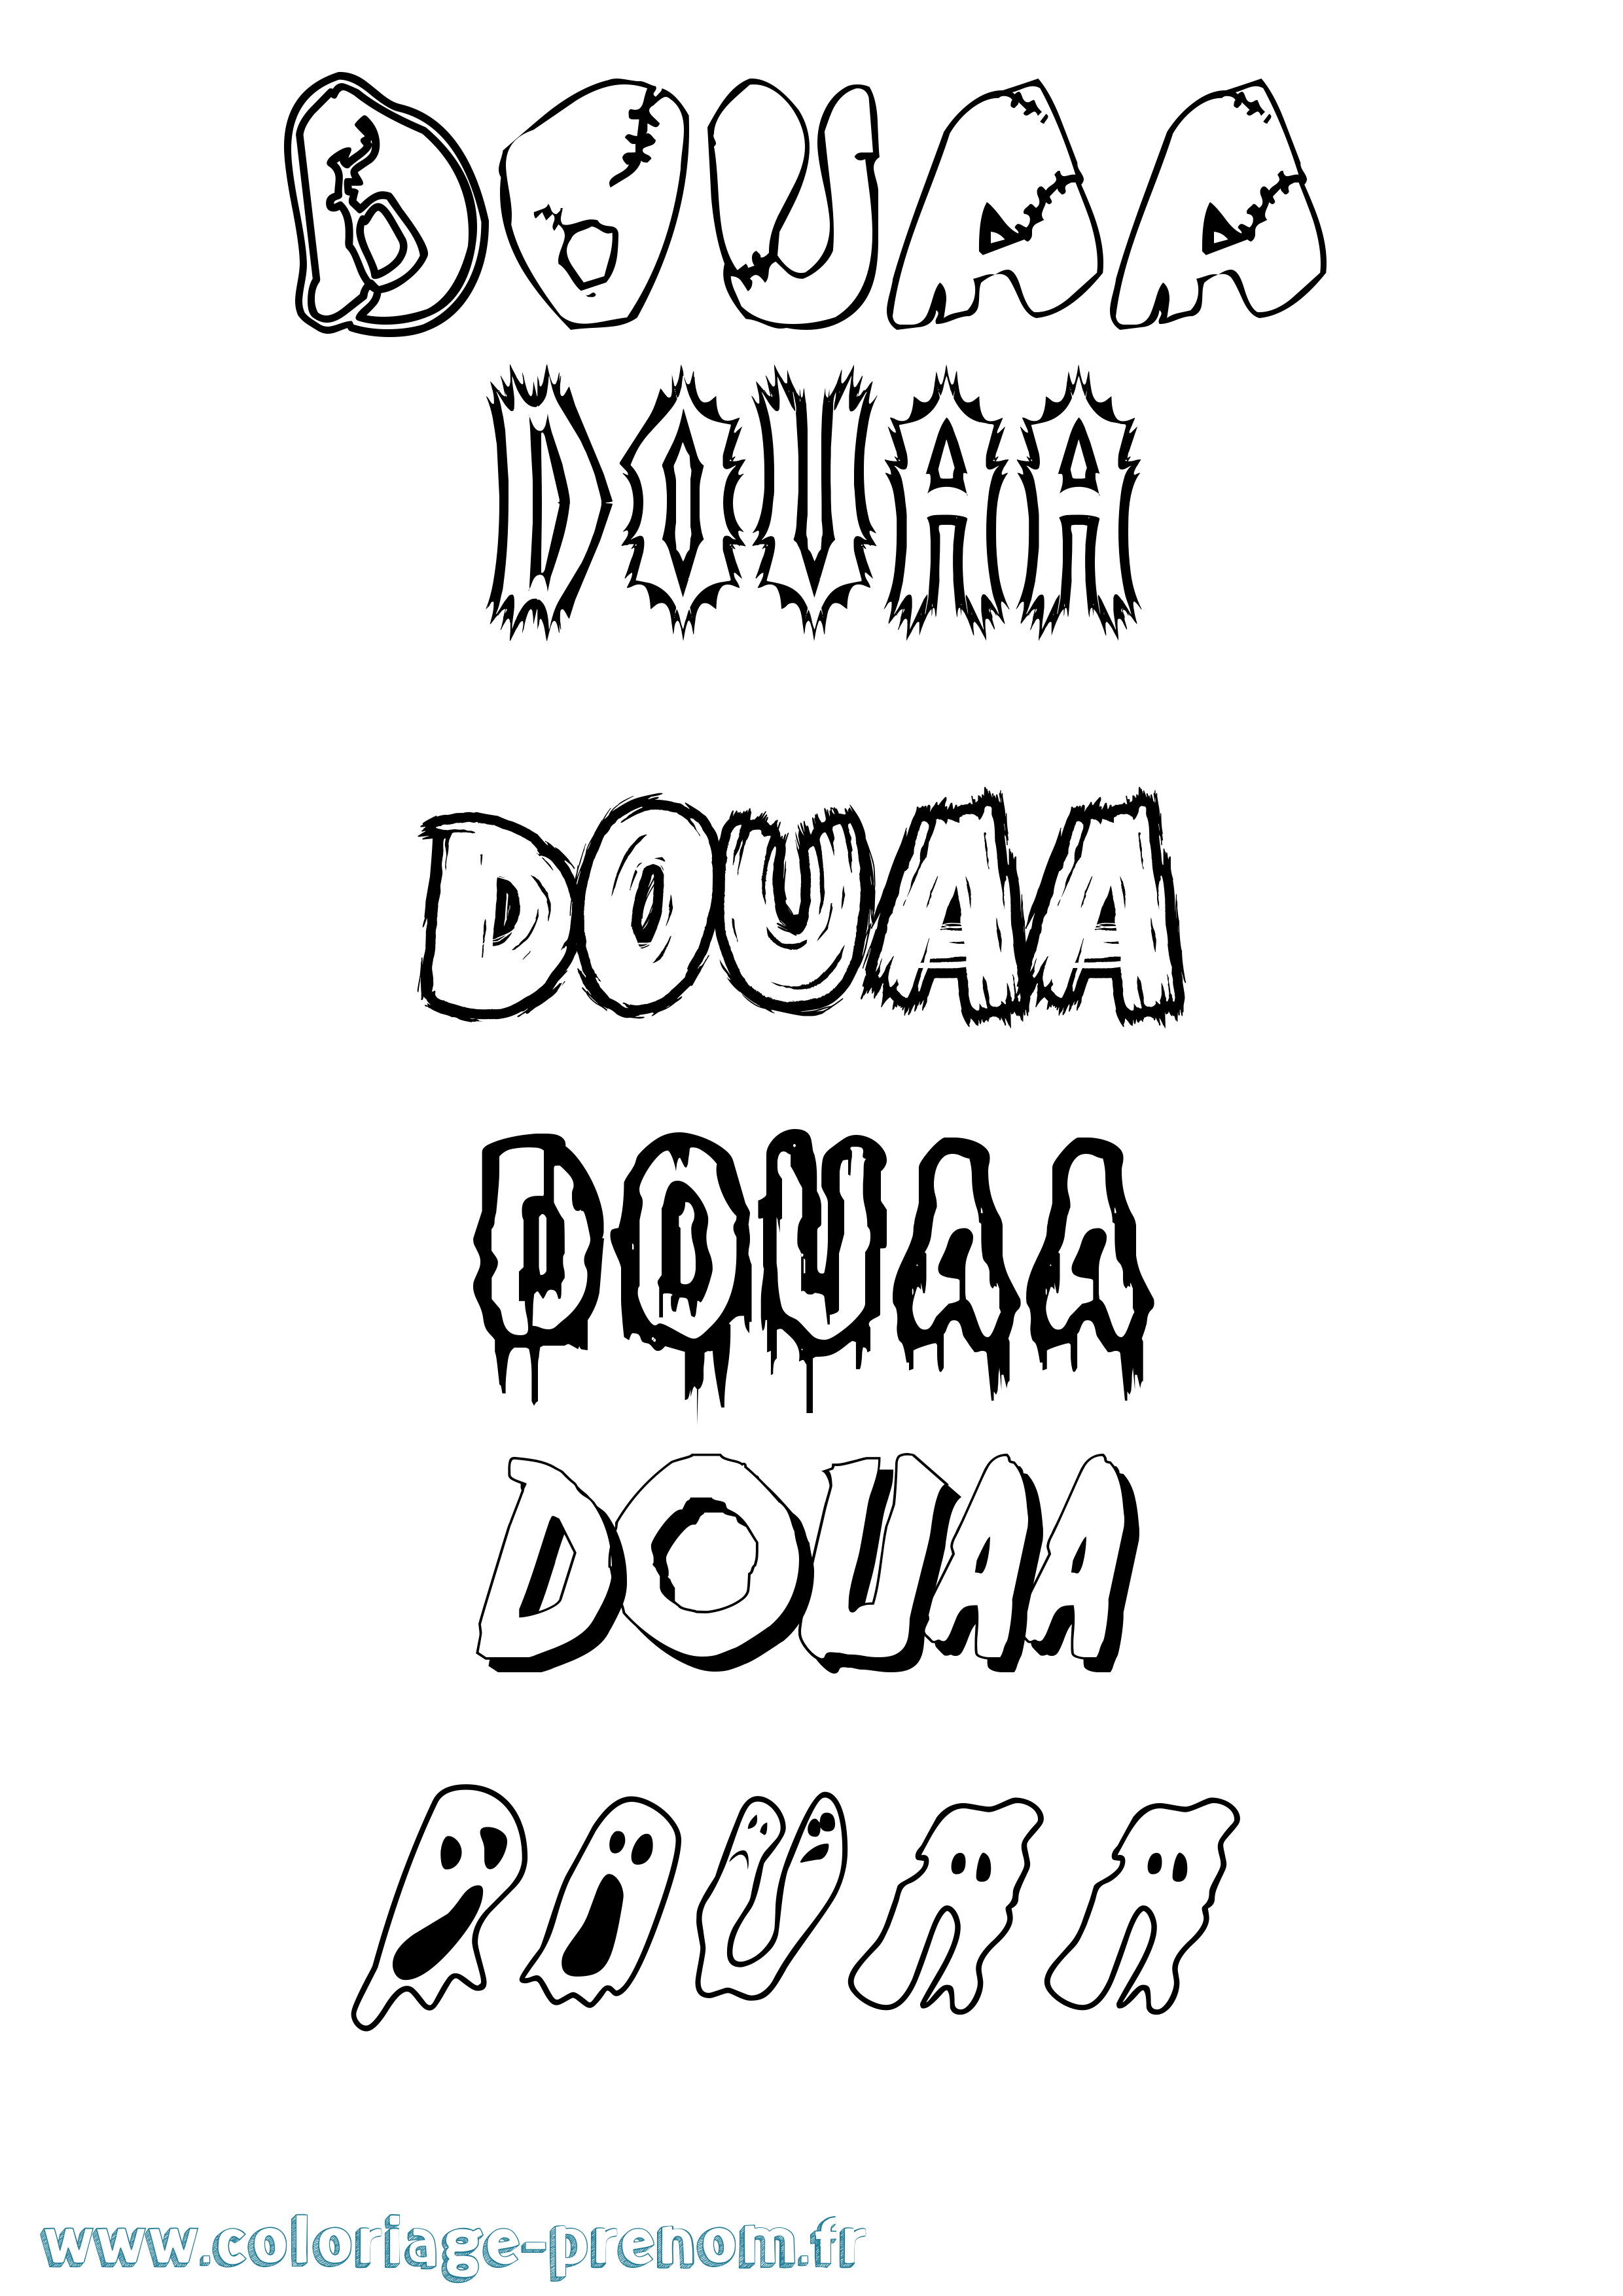 Coloriage prénom Douaa Frisson